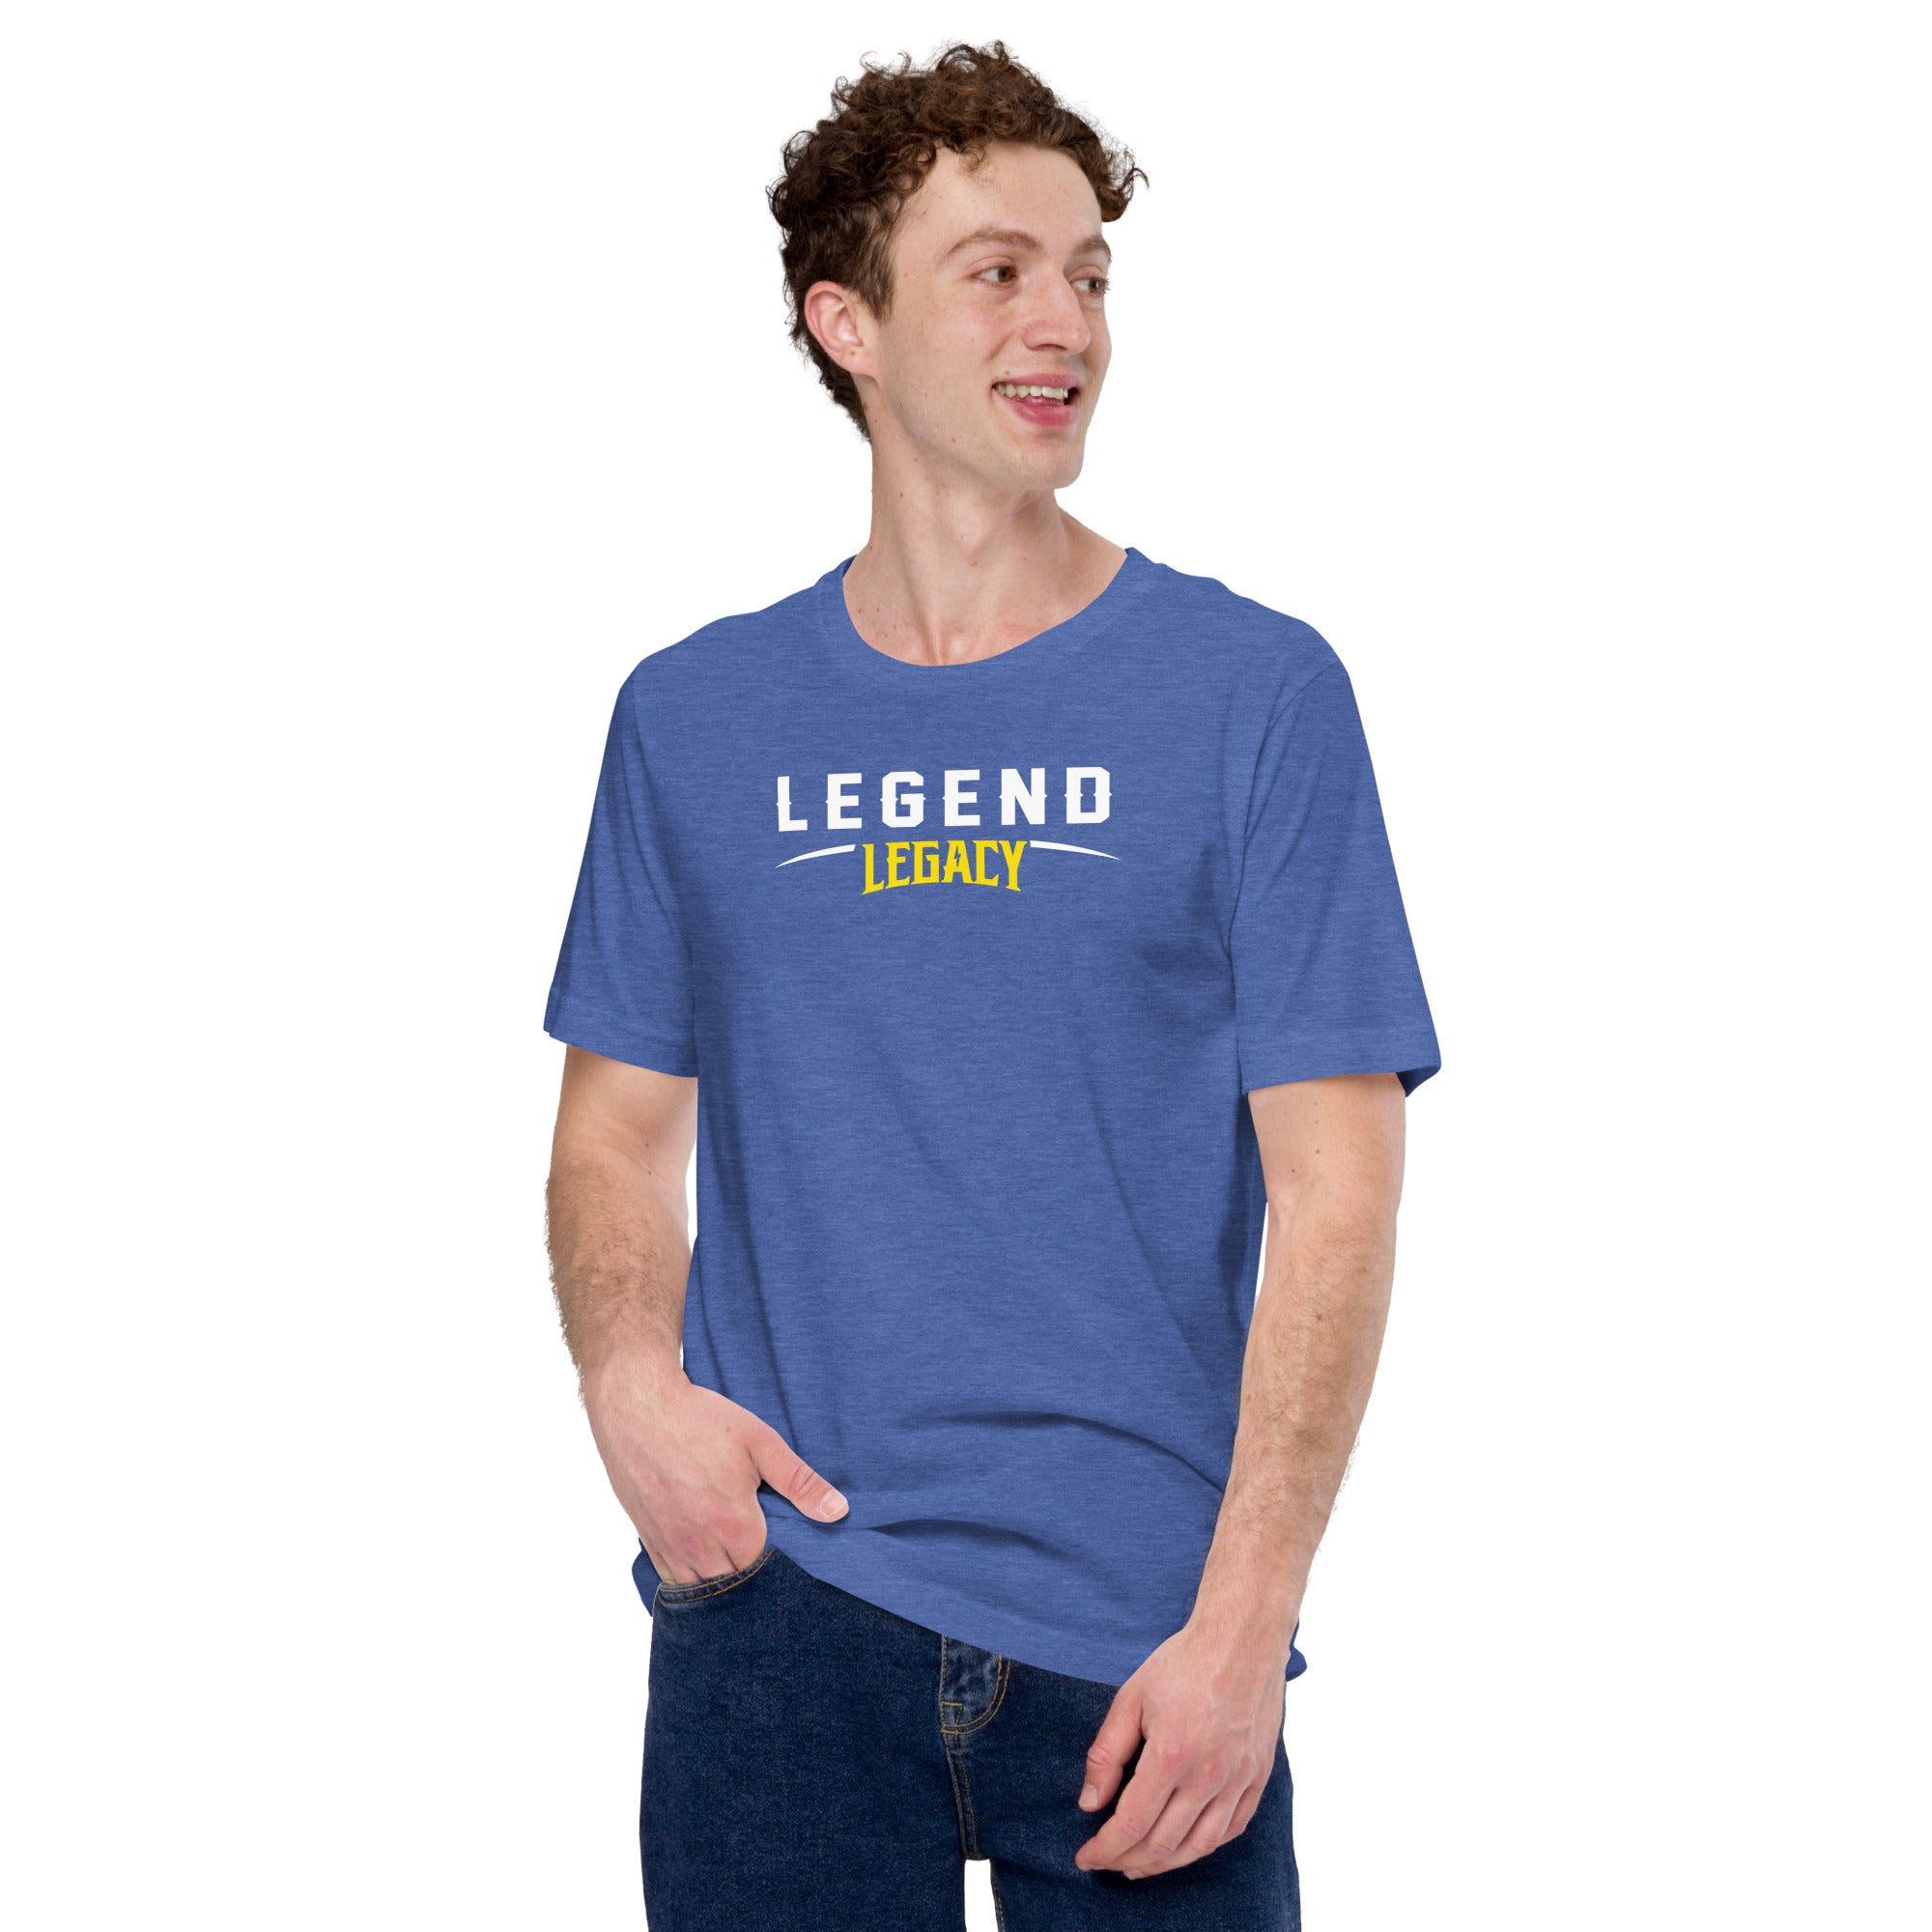 Legend Short-Sleeve Unisex T-Shirt